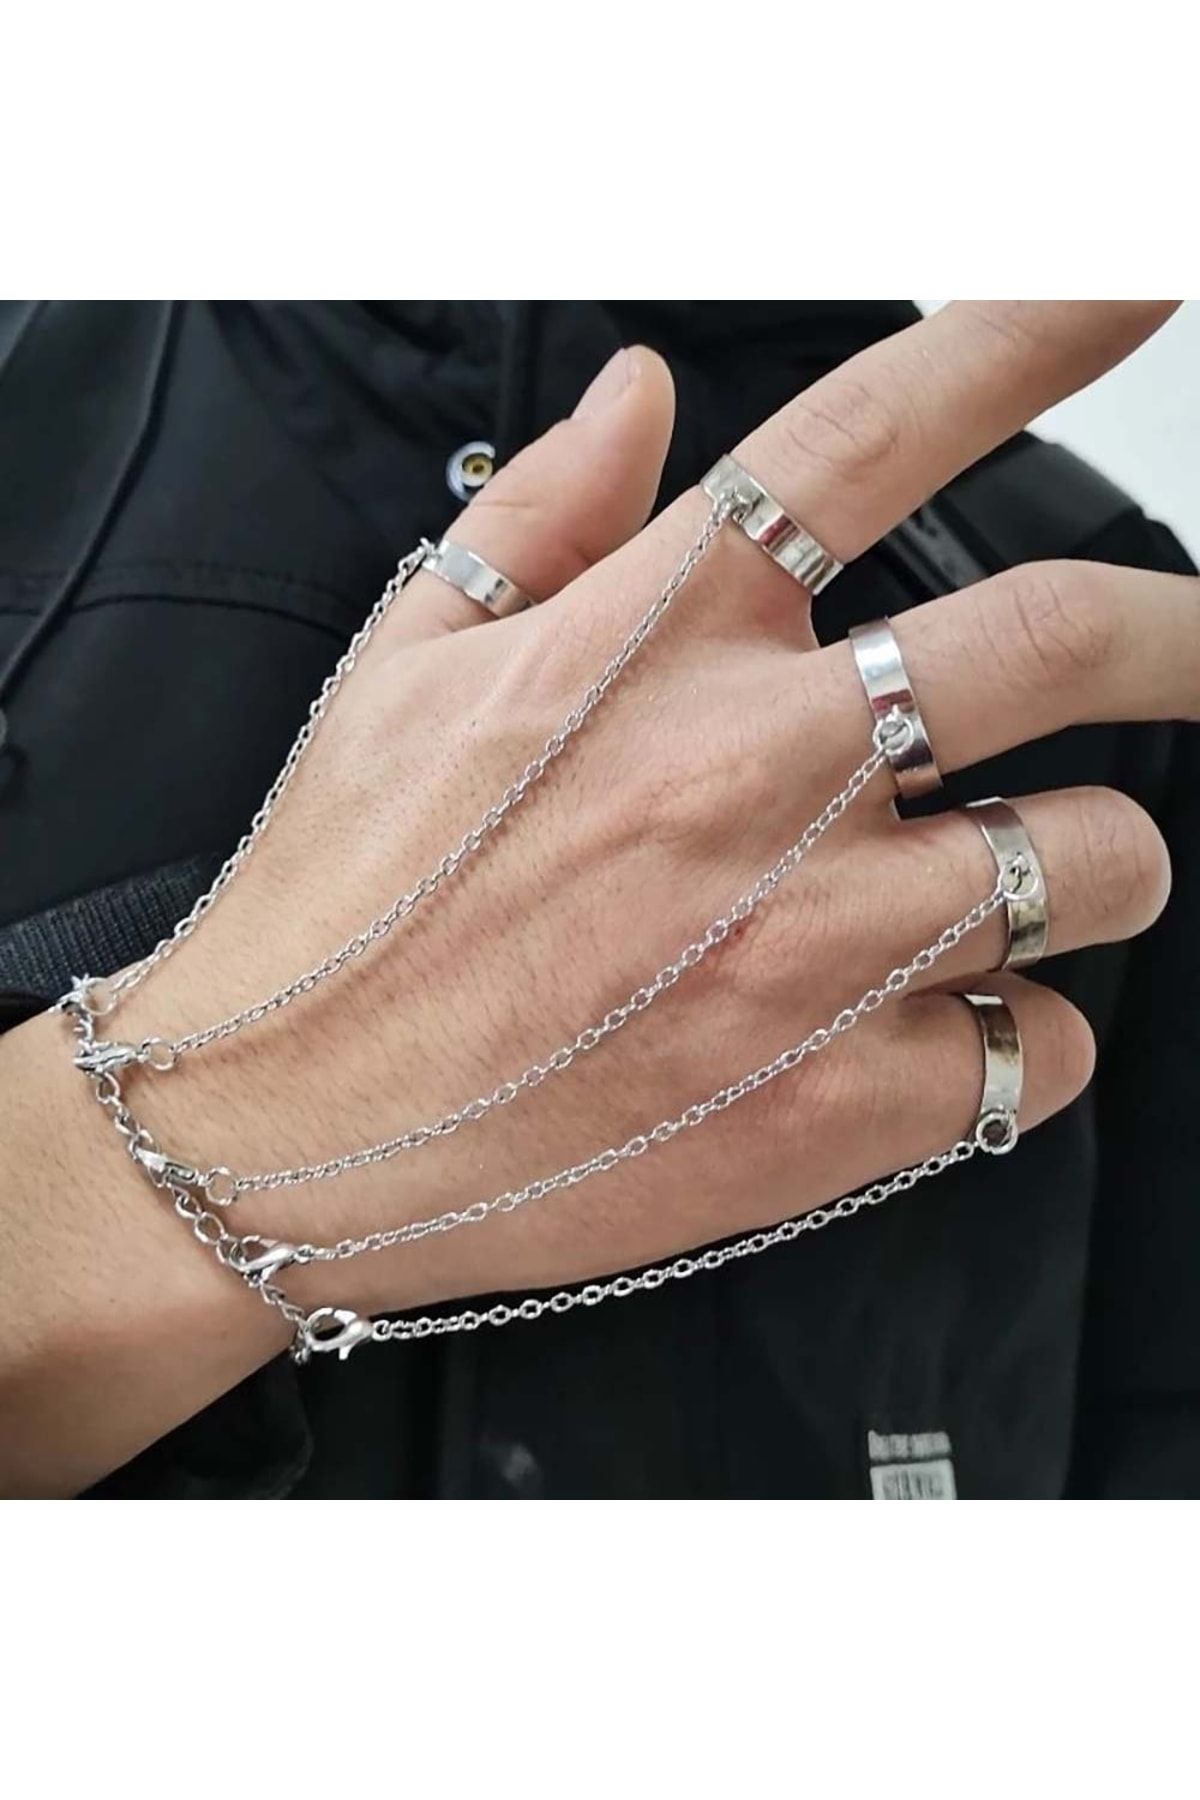 J Grace Lover La Lace Chain Finger Bracelet - J Grace Designs ~ Jewelry by  Jami Miller